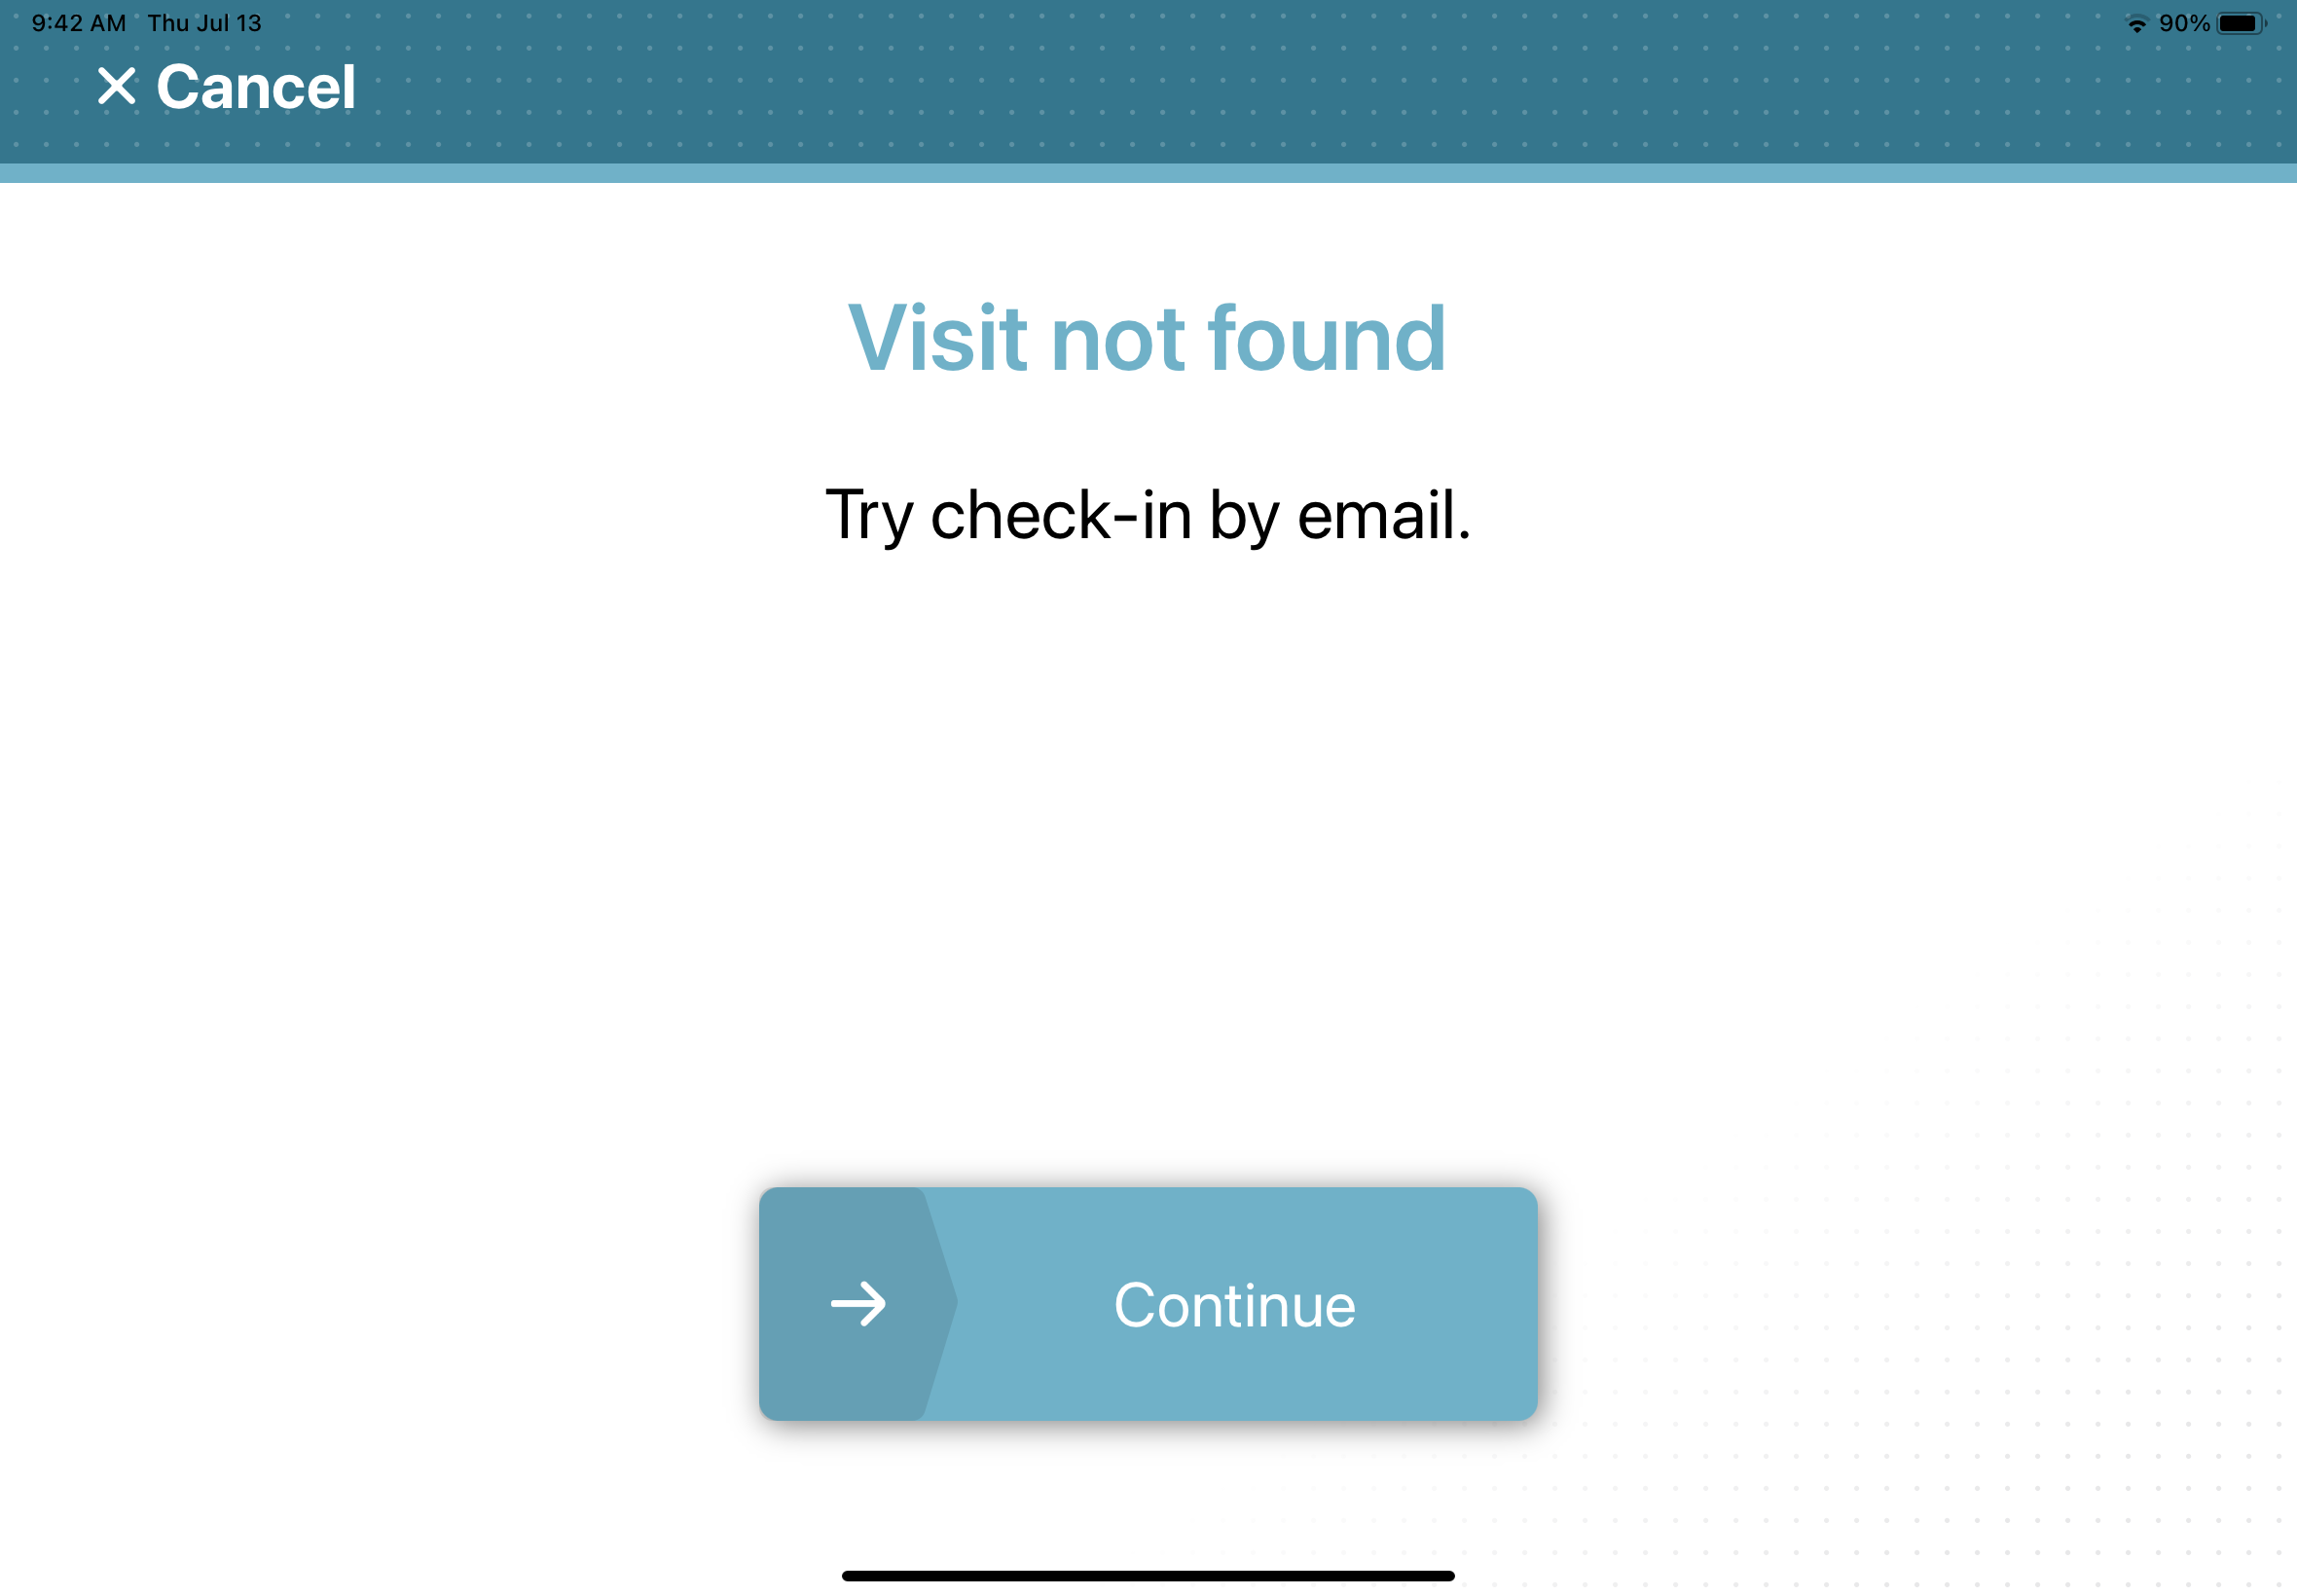 La aplicación móvil ClearID Self-Service Kiosk muestra el mensaje de error de visita no encontrada.